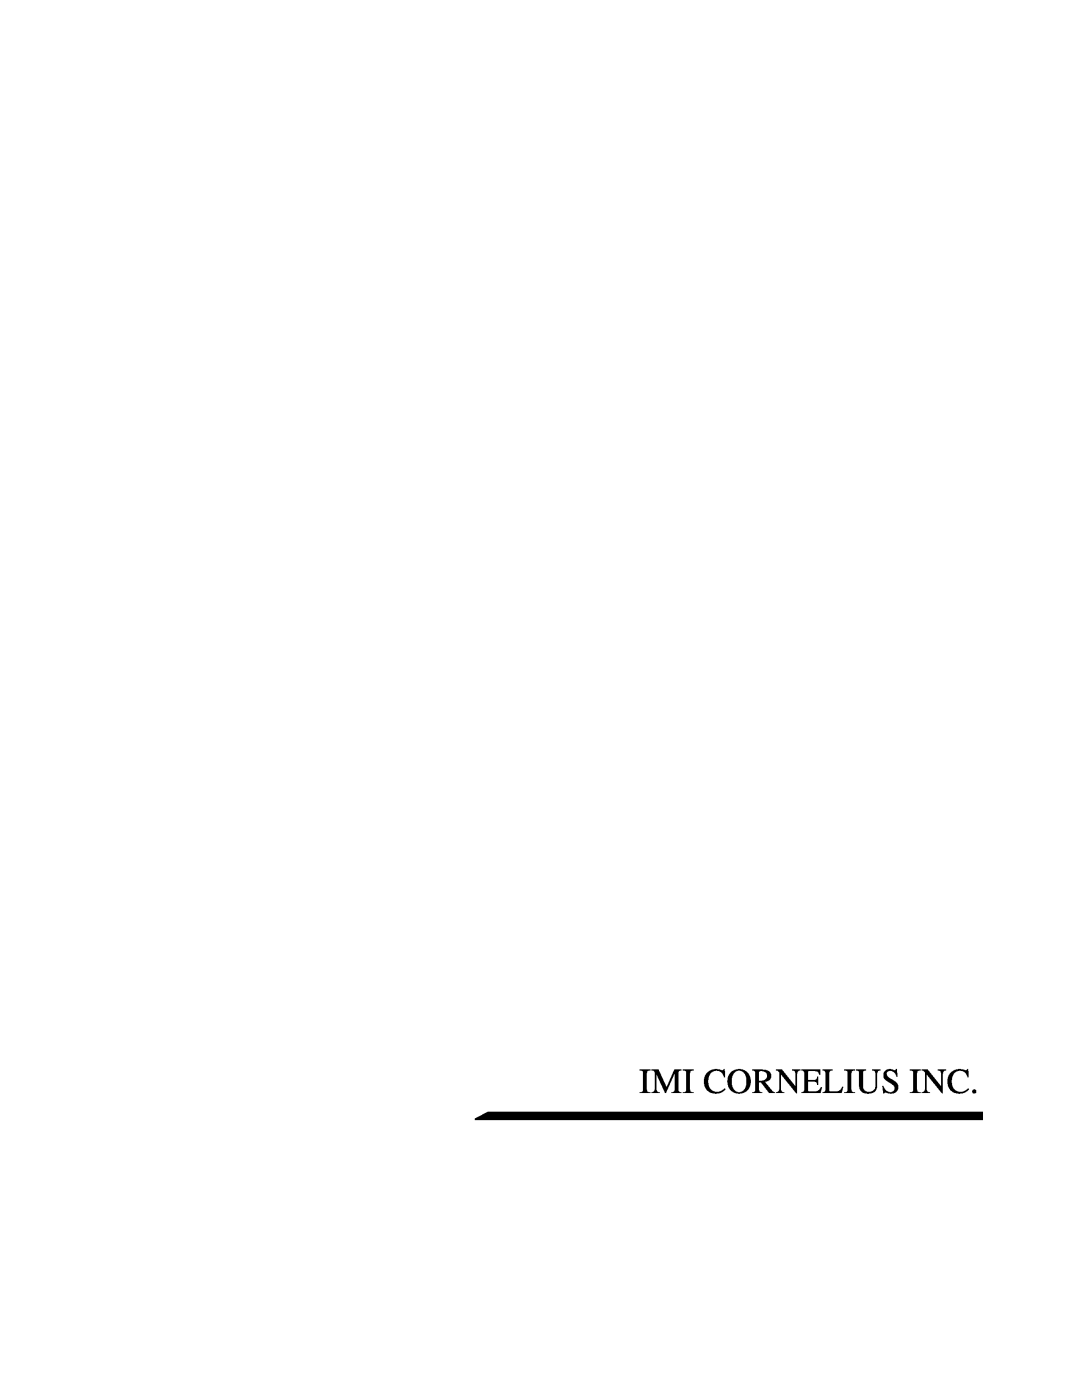 Cornelius ENDURO-175 installation manual Imi Cornelius Inc 